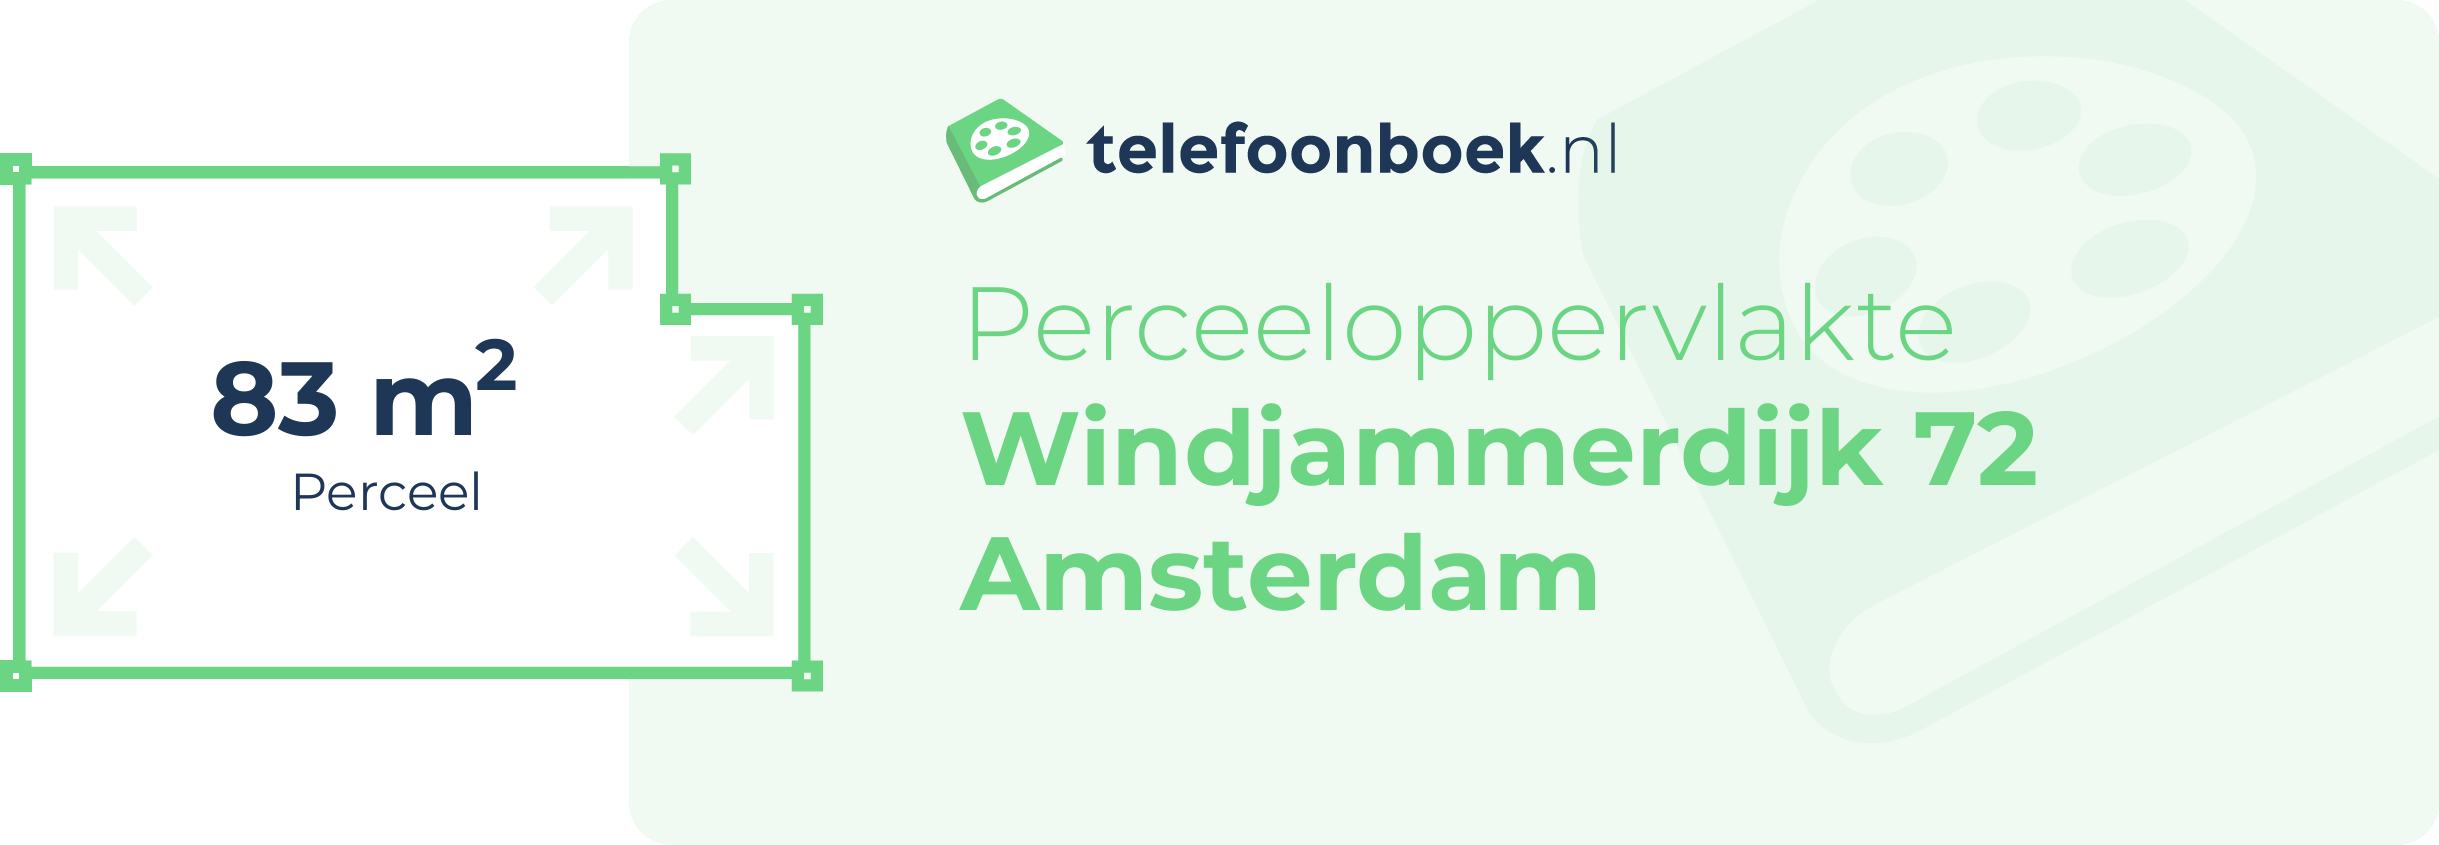 Perceeloppervlakte Windjammerdijk 72 Amsterdam